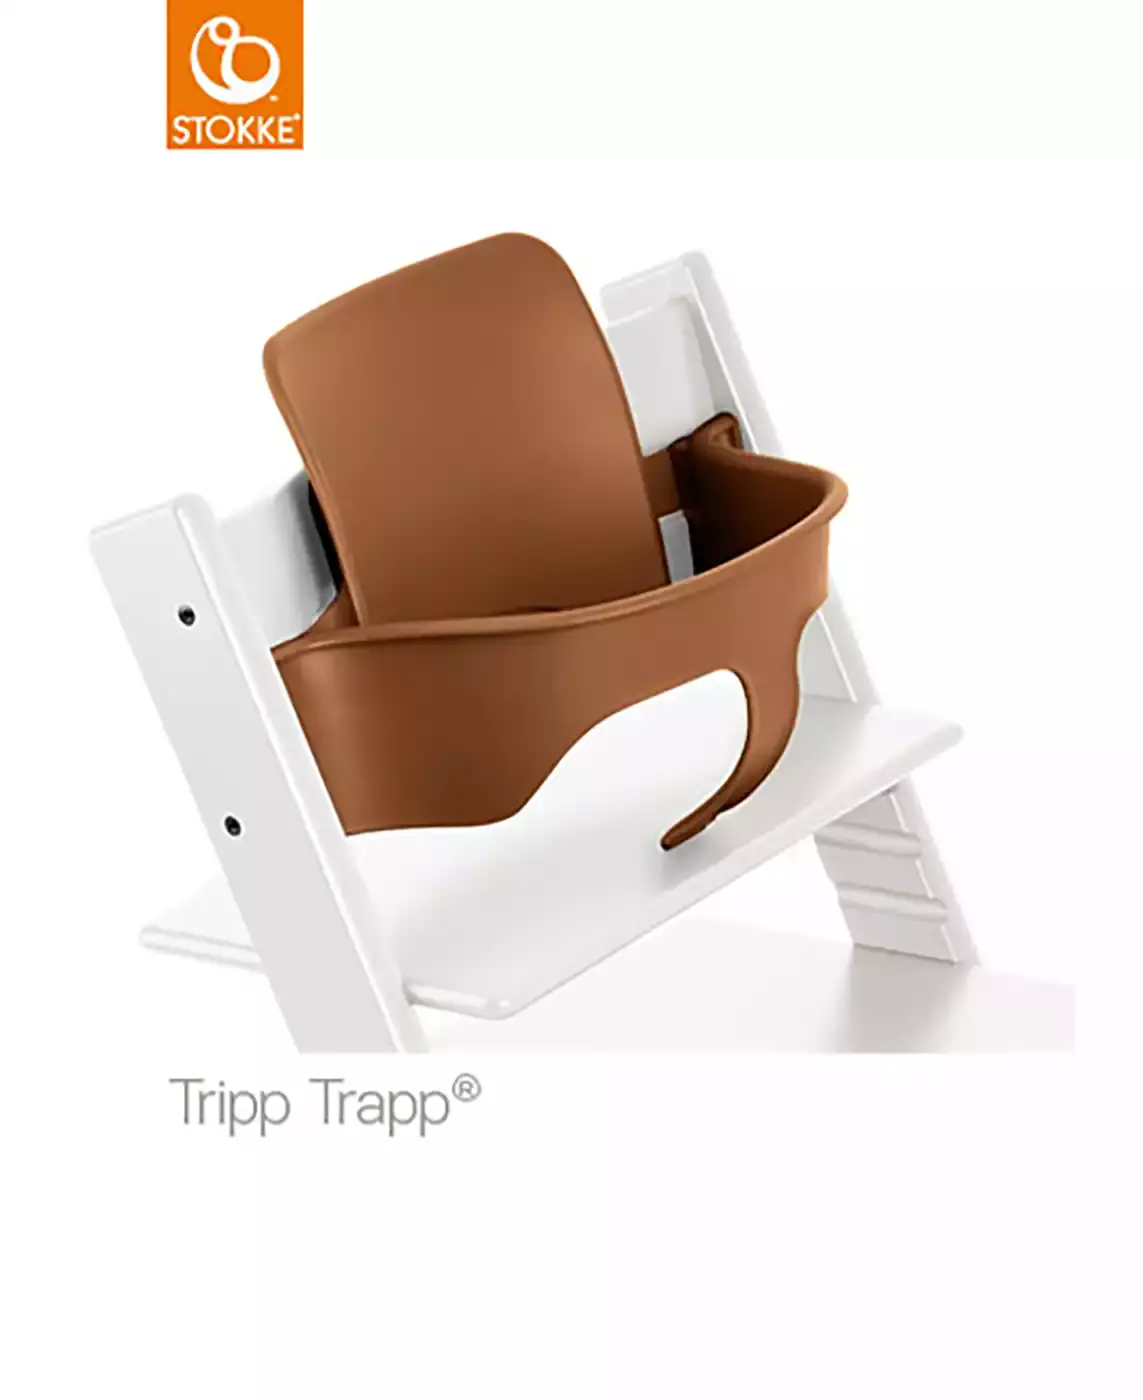 Tripp Trapp® Baby Set walnut STOKKE Braun 2000540601000 3